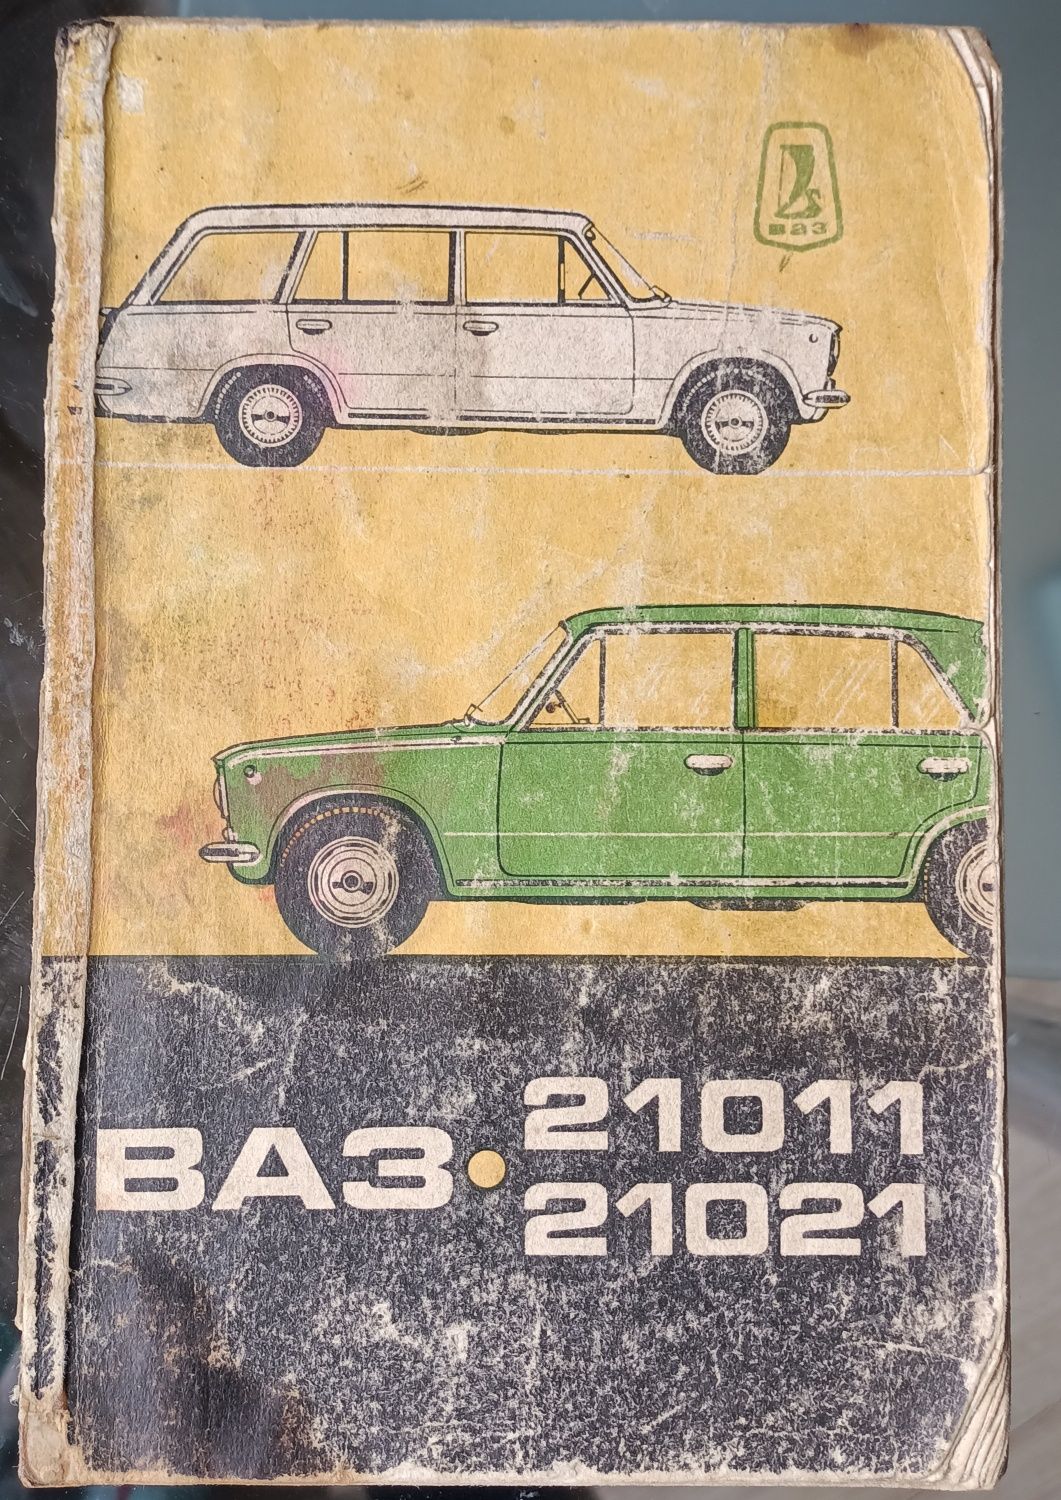 Инструкция по эксплуатации автомобилей ВАЗ– 21011 и ВАЗ – 21021. 1975г